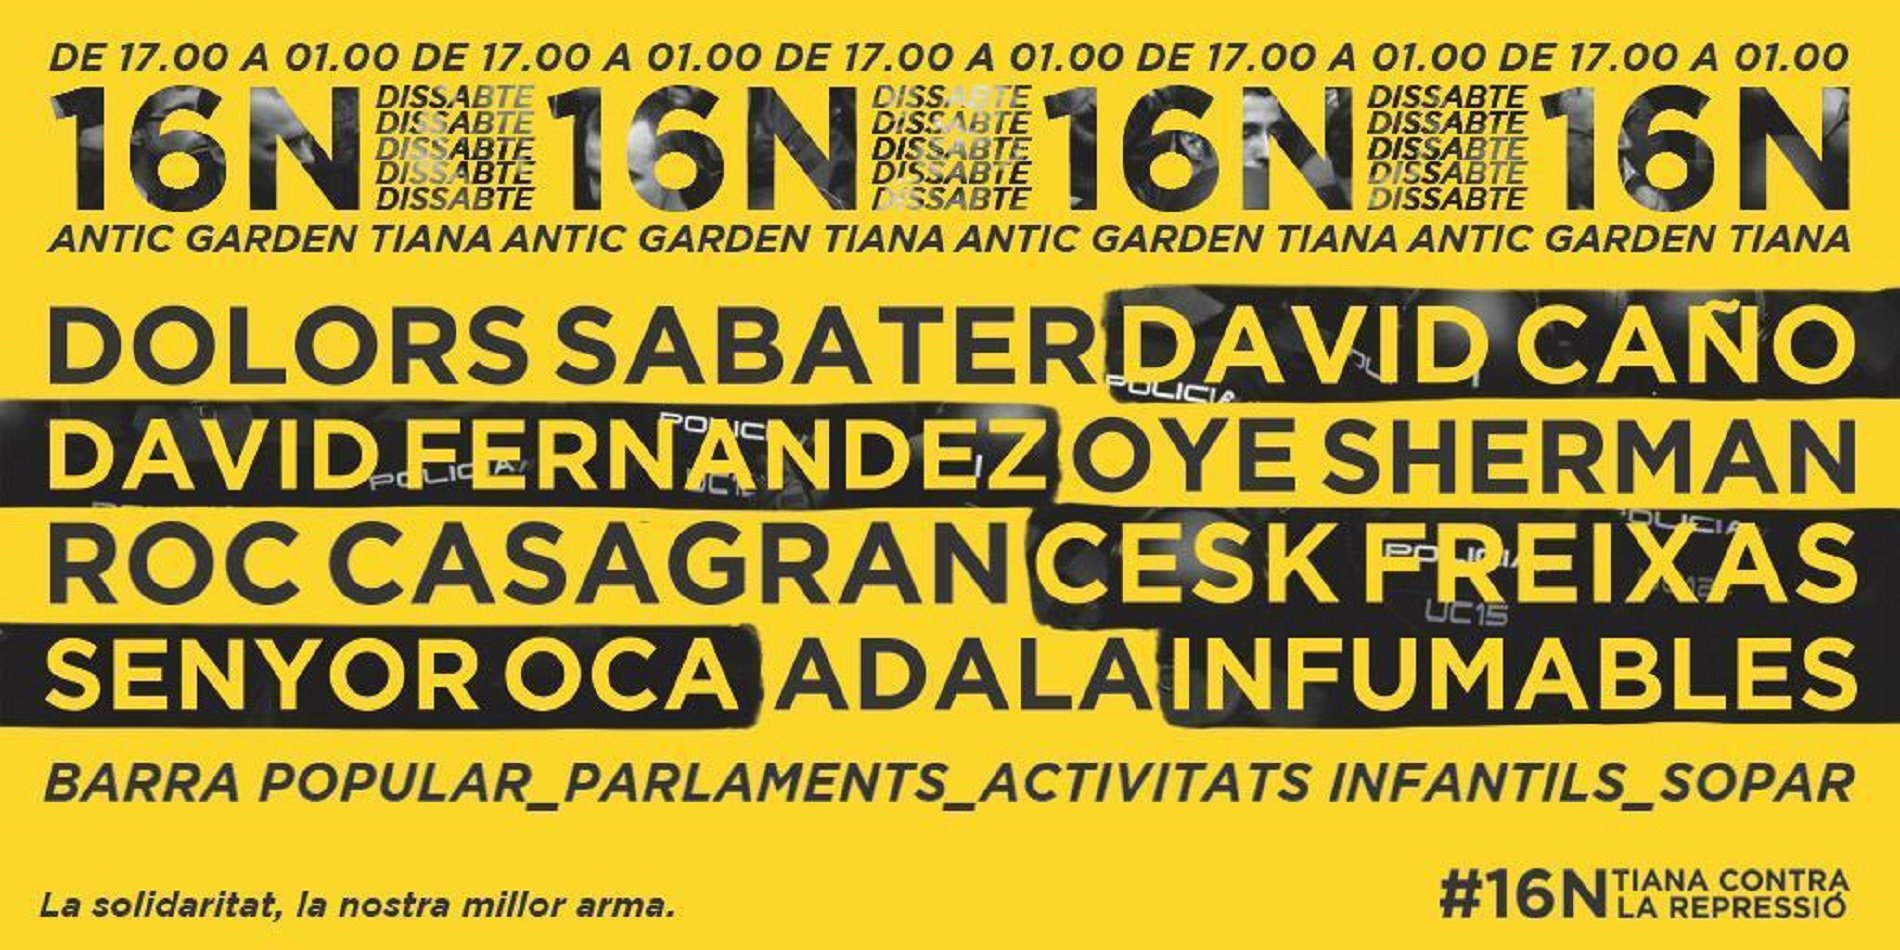 David Fernàndez, Dolors Sabater y Cesk Freixas juntos en Tiana en un acto anti-represivo y solidario